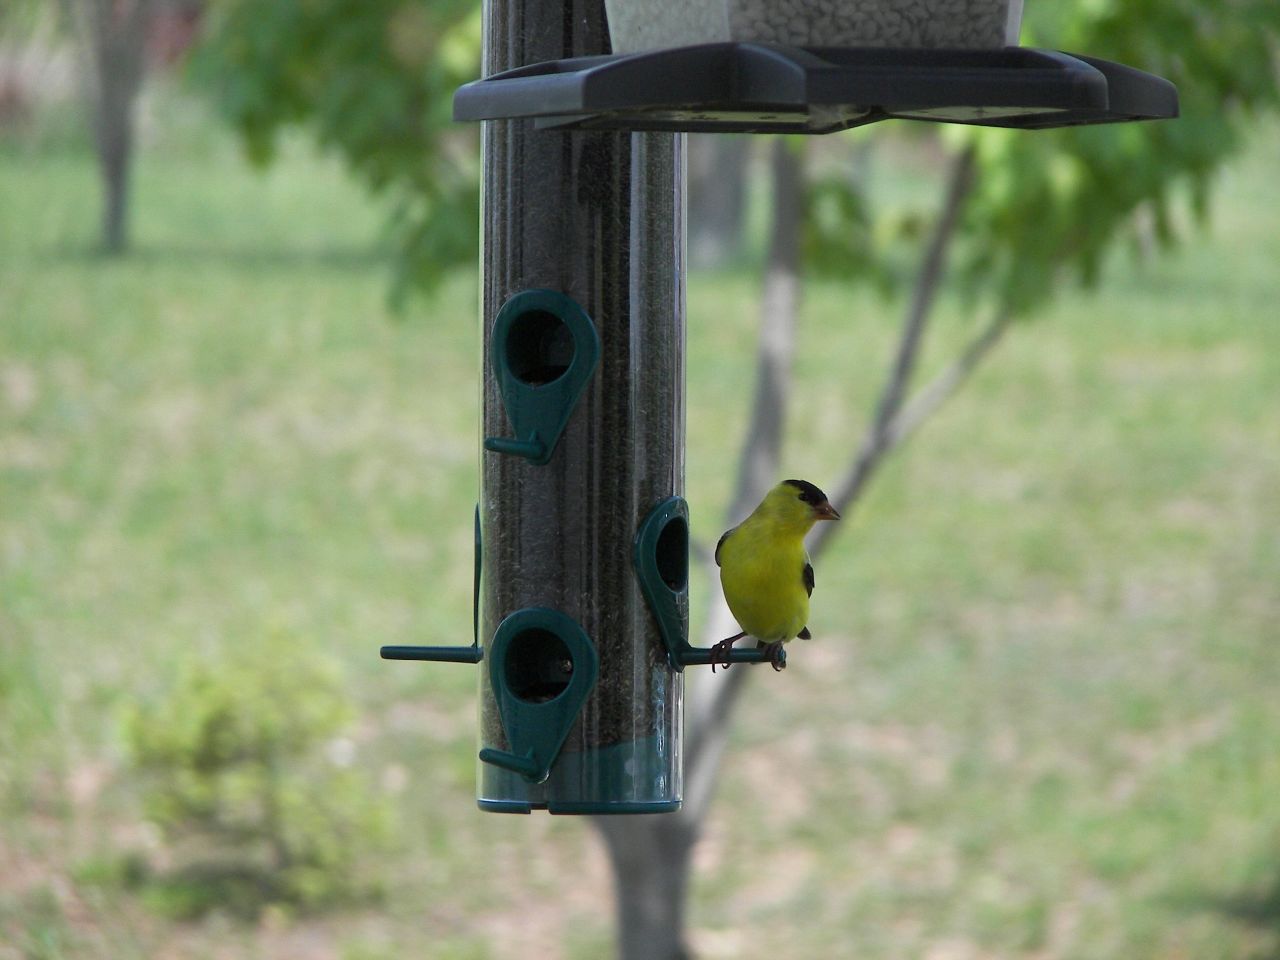 a little yellow bird perched on a bird feeder